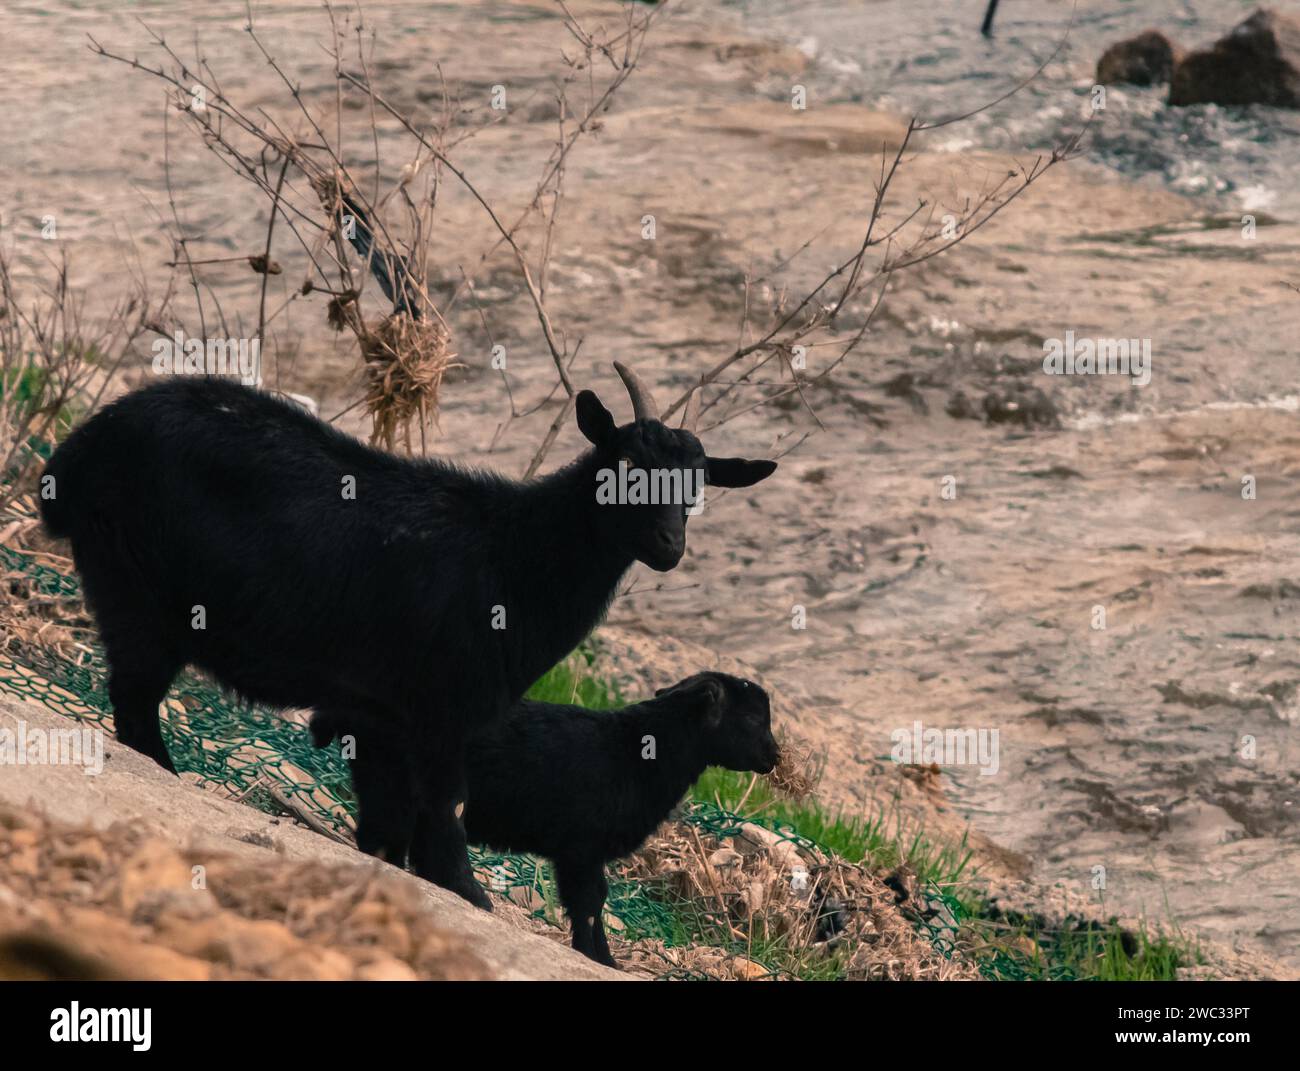 Deux chèvres noires, un adulte et un enfant, sur le flanc d'une colline à côté d'une rivière Banque D'Images